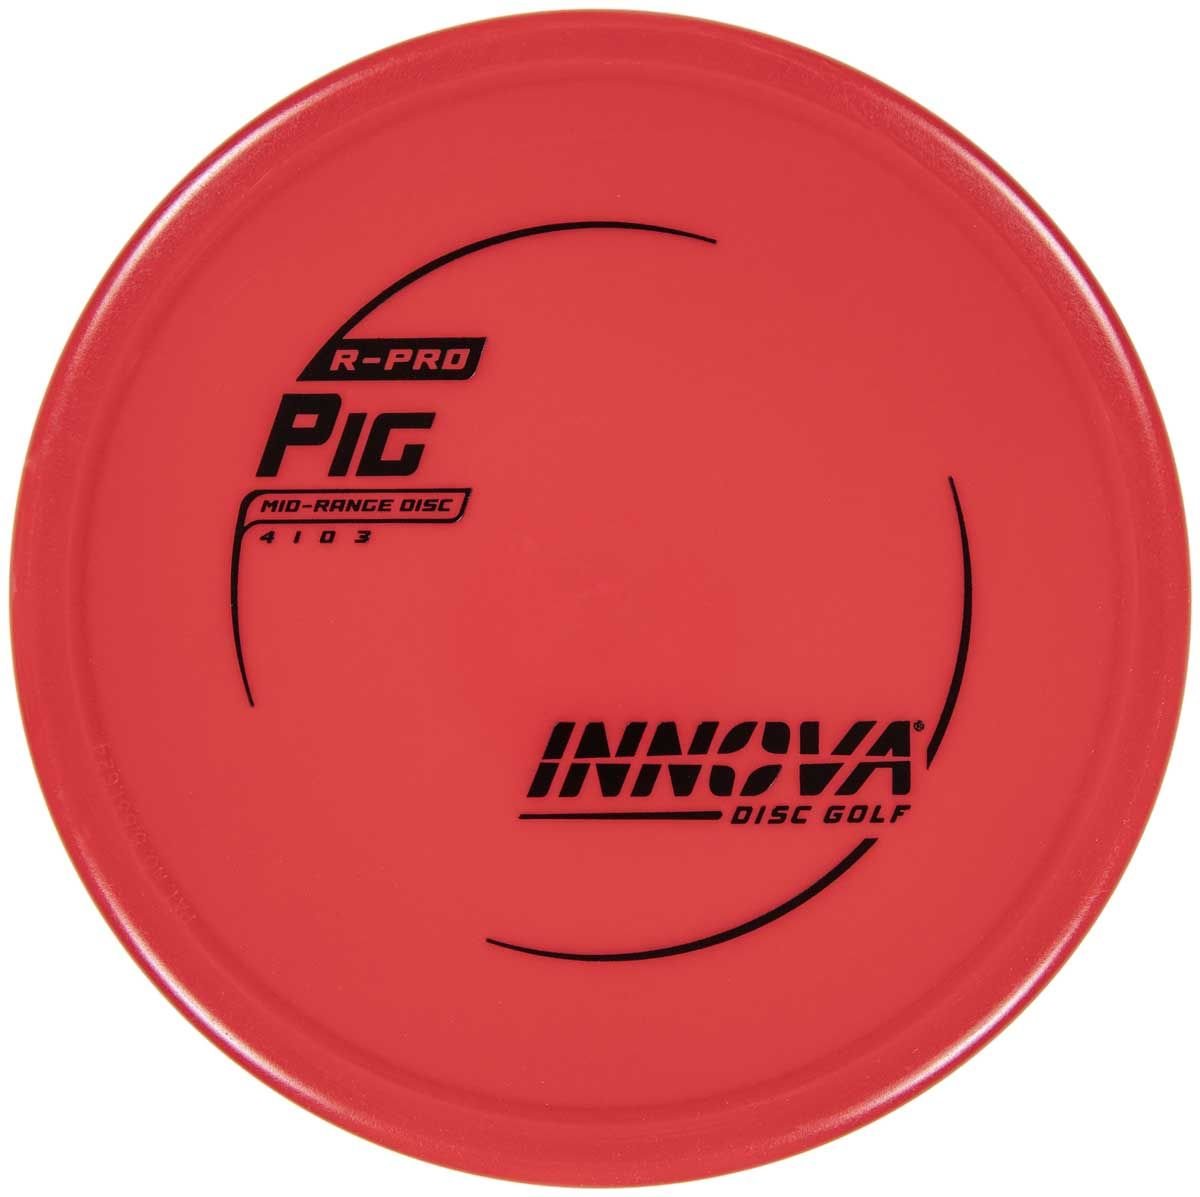 Innova Disc Golf Pig